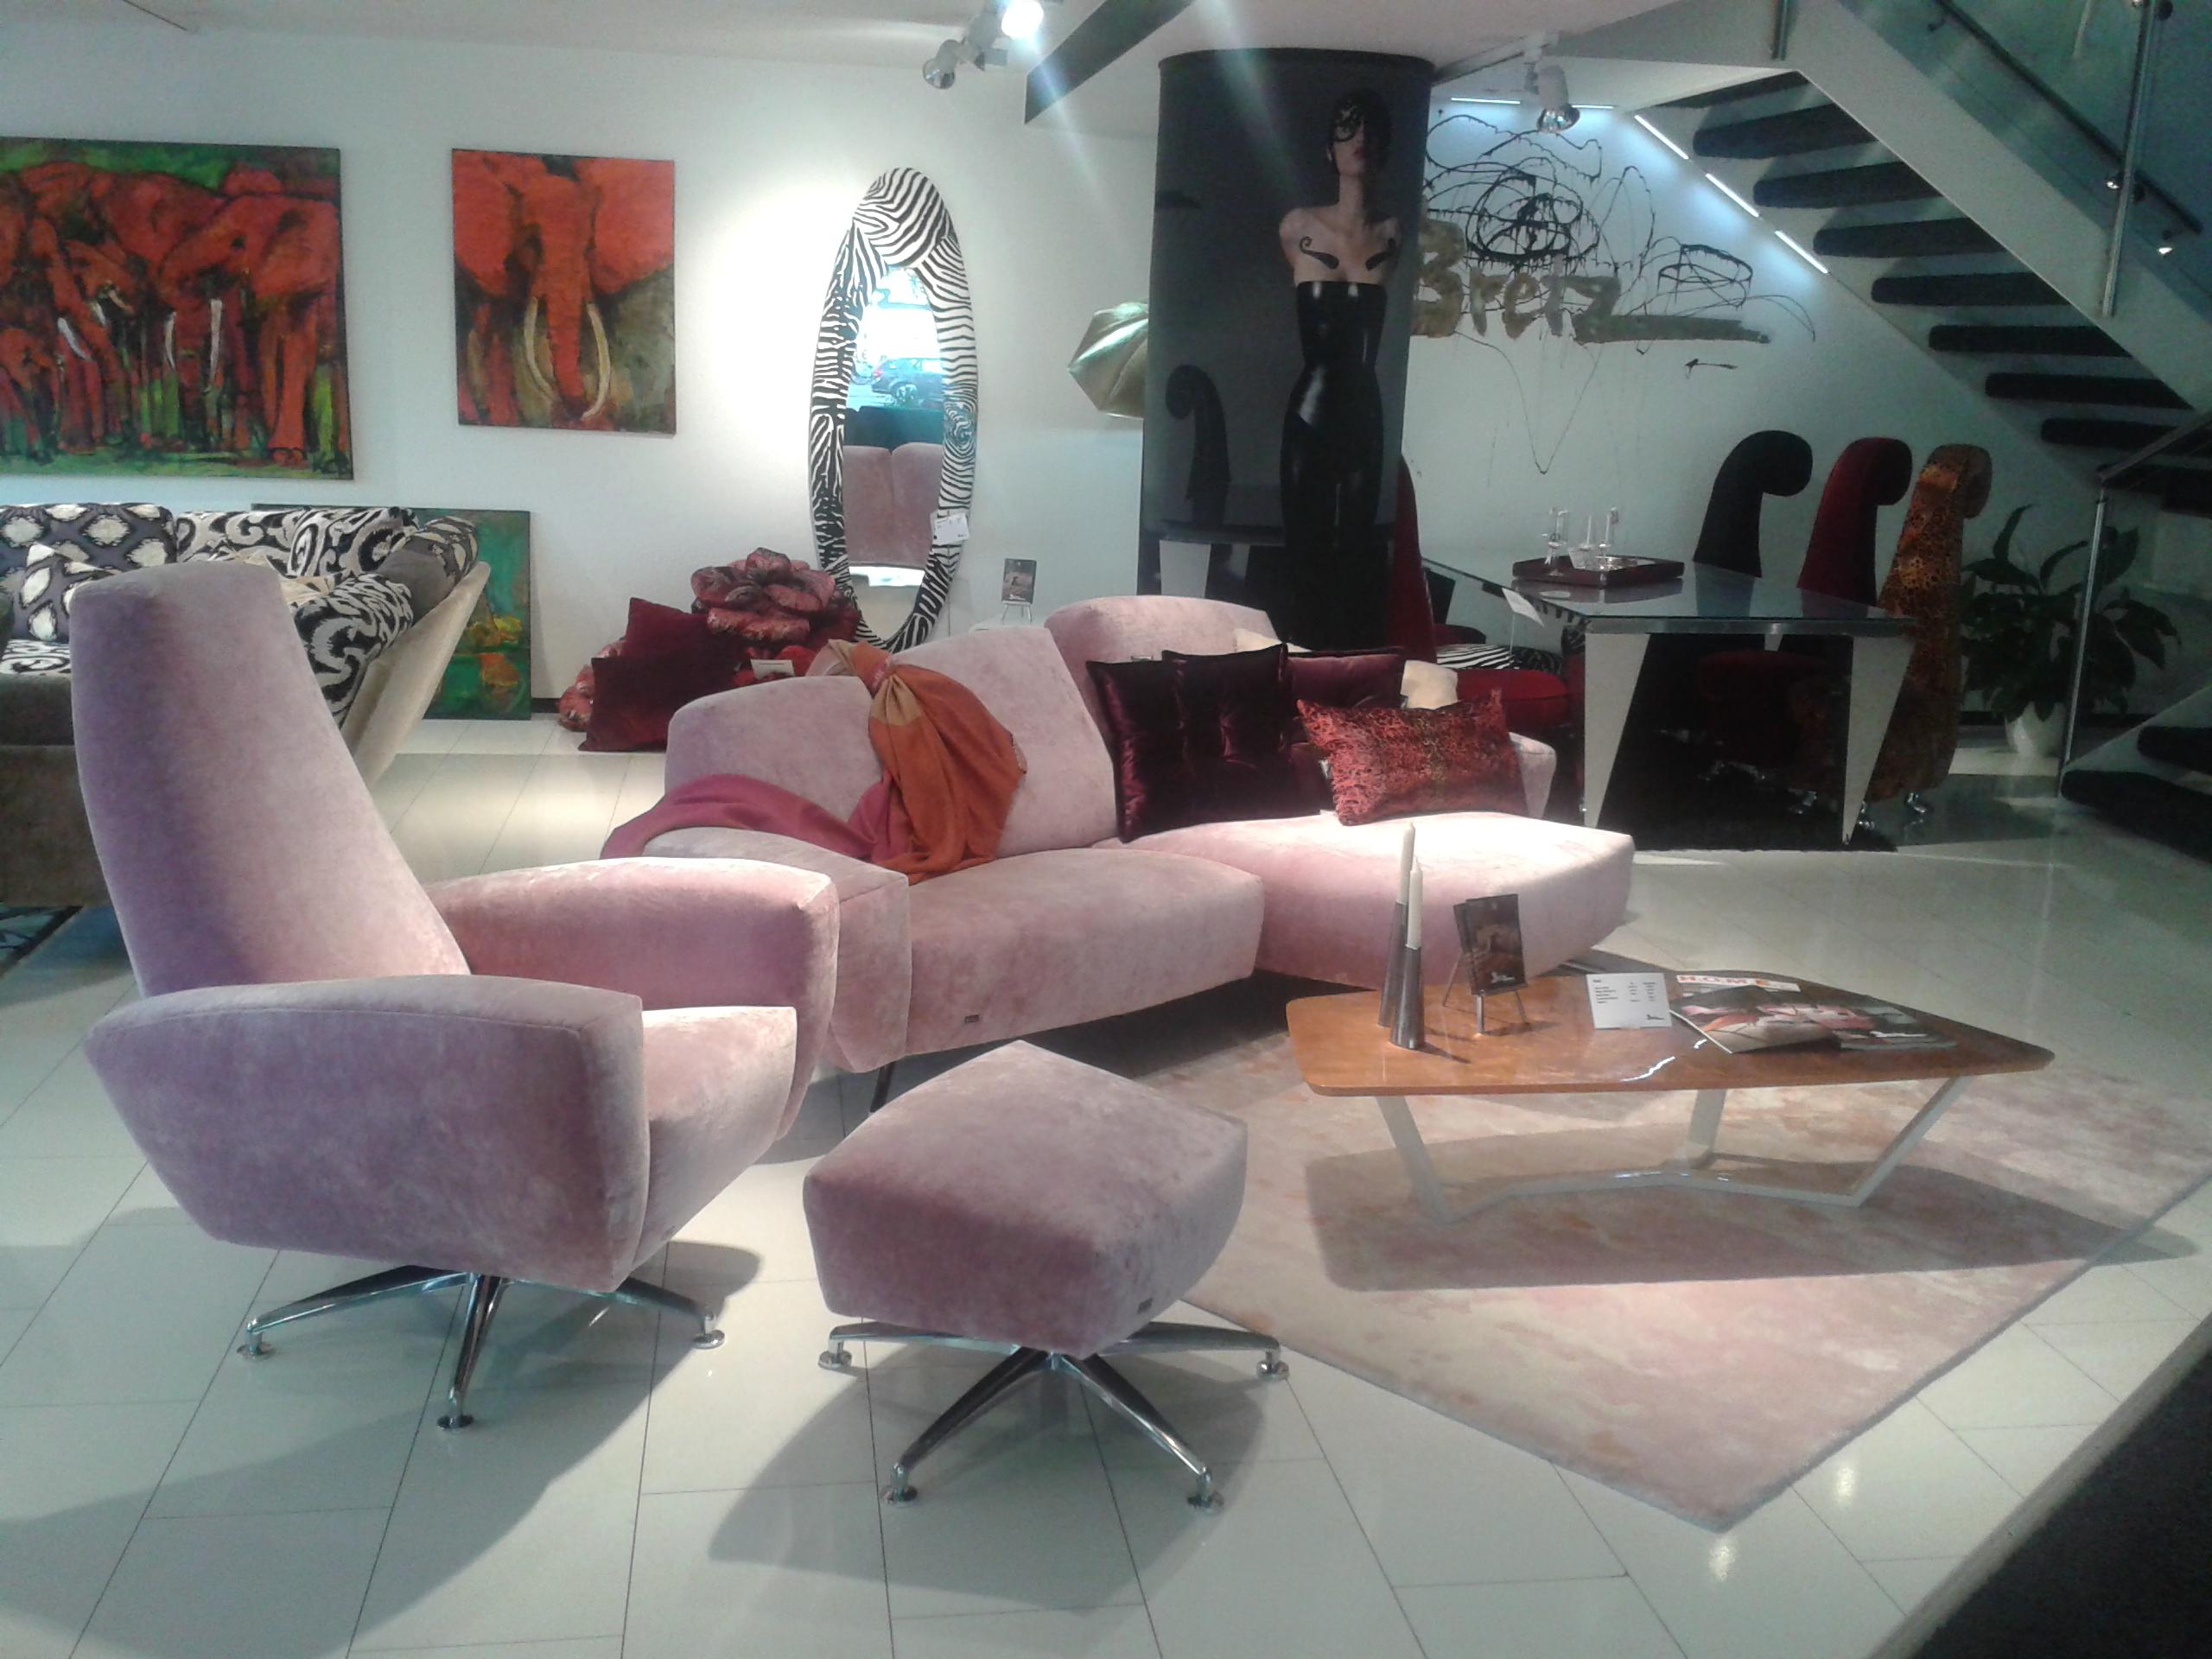 Harmonisch pastellige Sitzgruppe mit Kupferakzenten #sofa #samtsofa #rosafarbenessofa #rosafarbenessamtsofa ©Bretz / Design Carolin Fieber